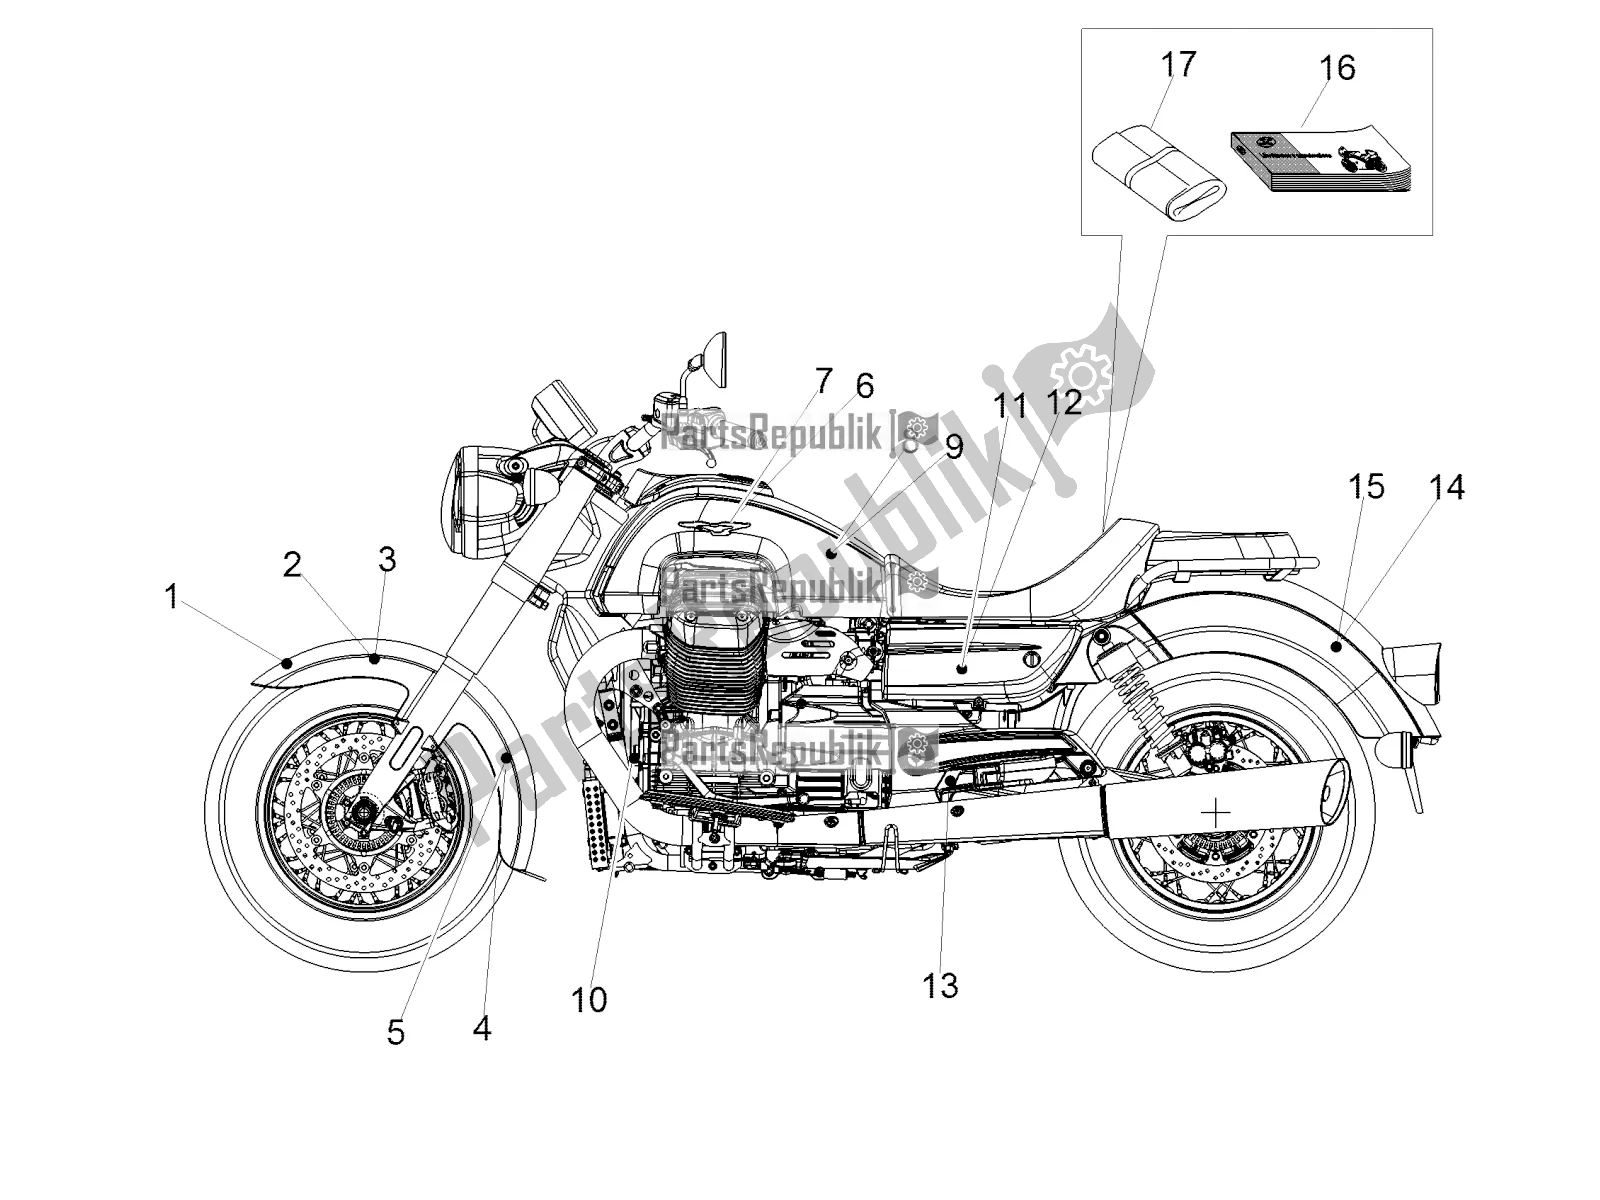 Alle onderdelen voor de Sticker van de Moto-Guzzi Eldorado 1400 ABS Apac 2020